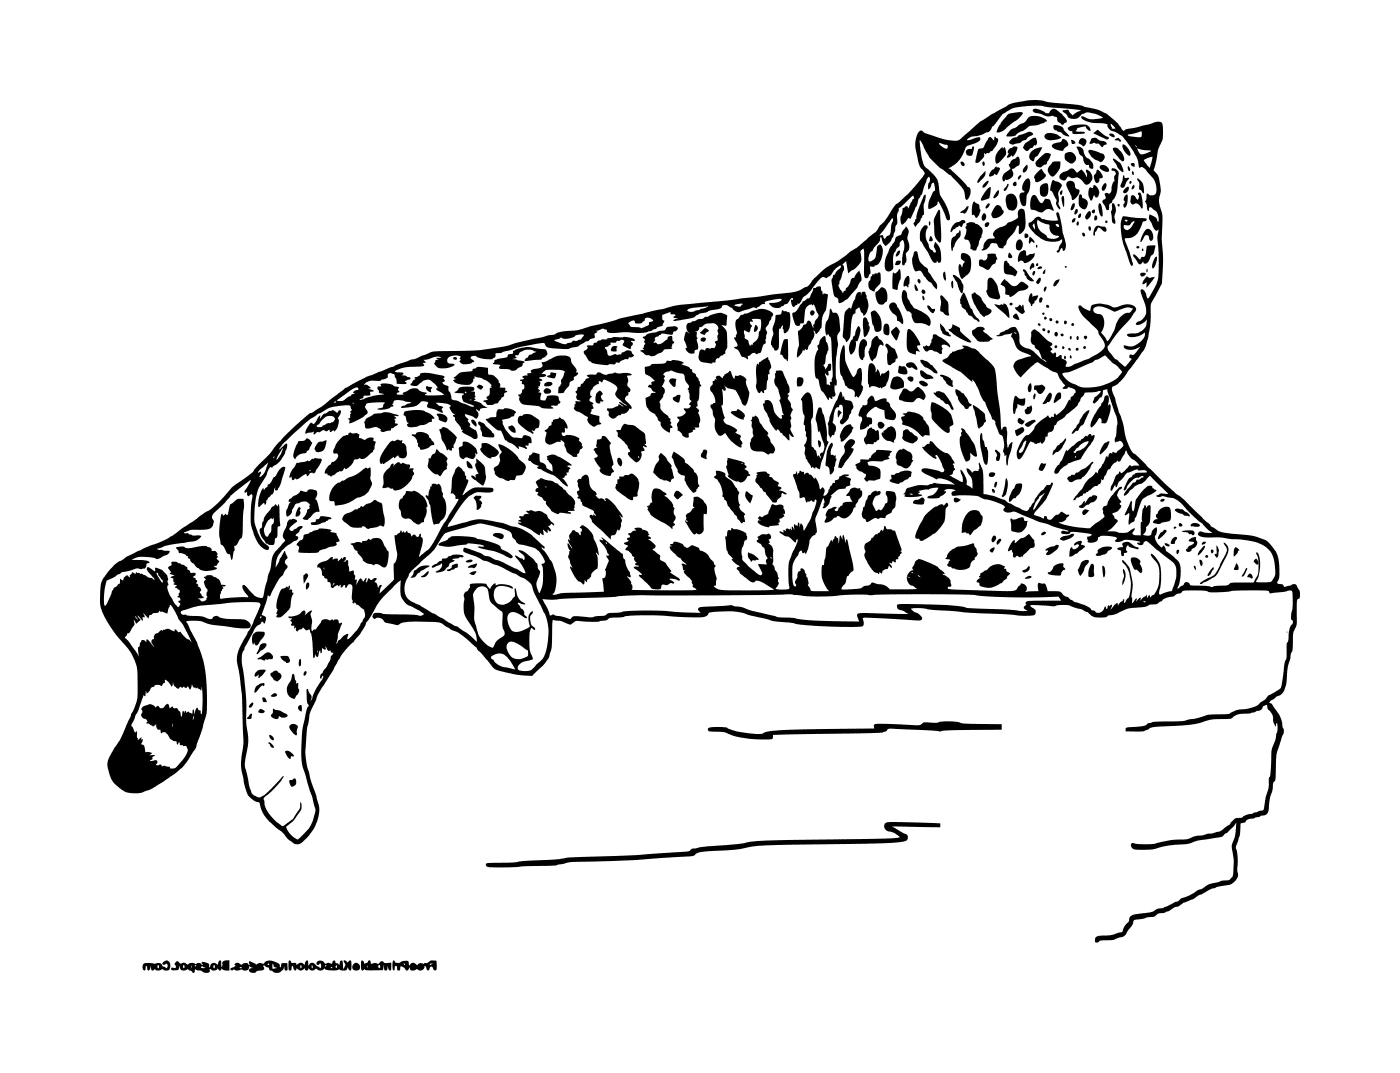  Un leopardo mentiroso 